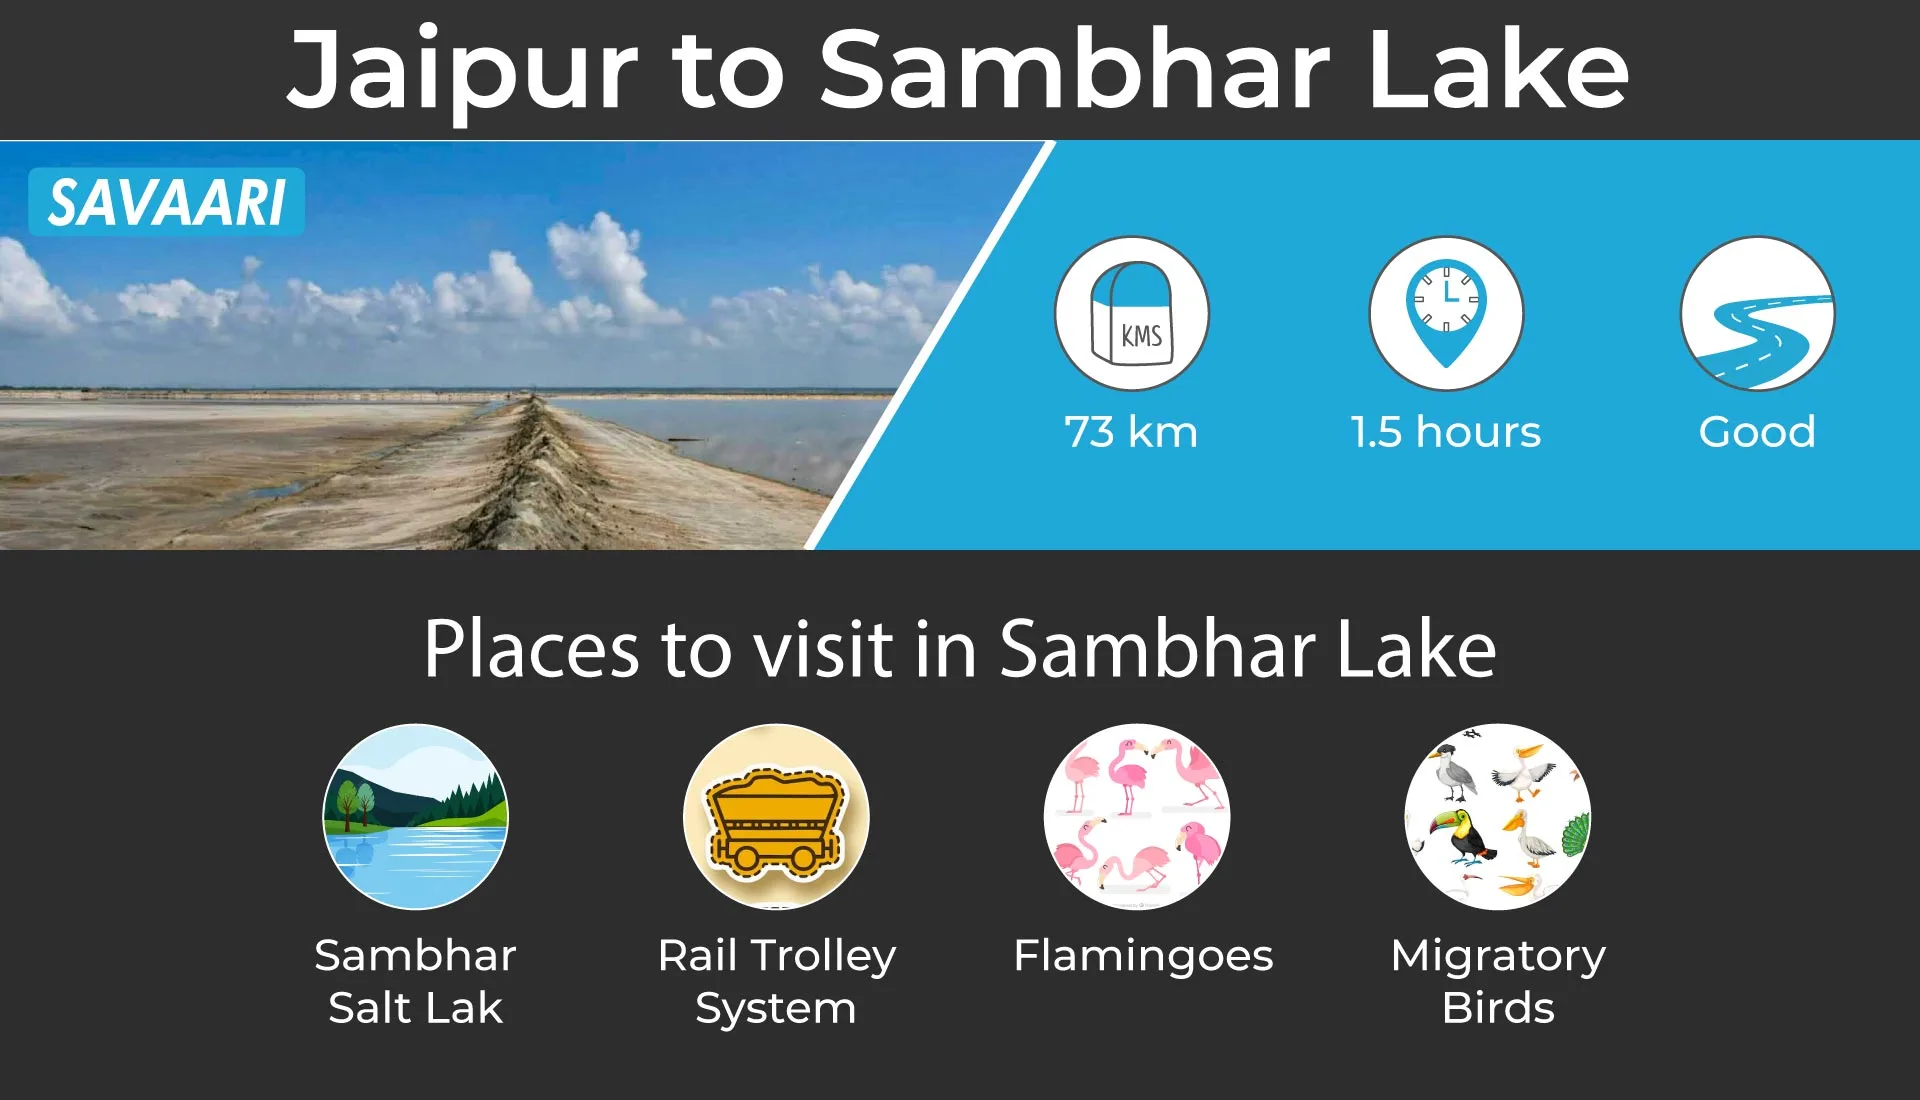 Sambhar lake long drive destination near jaipur